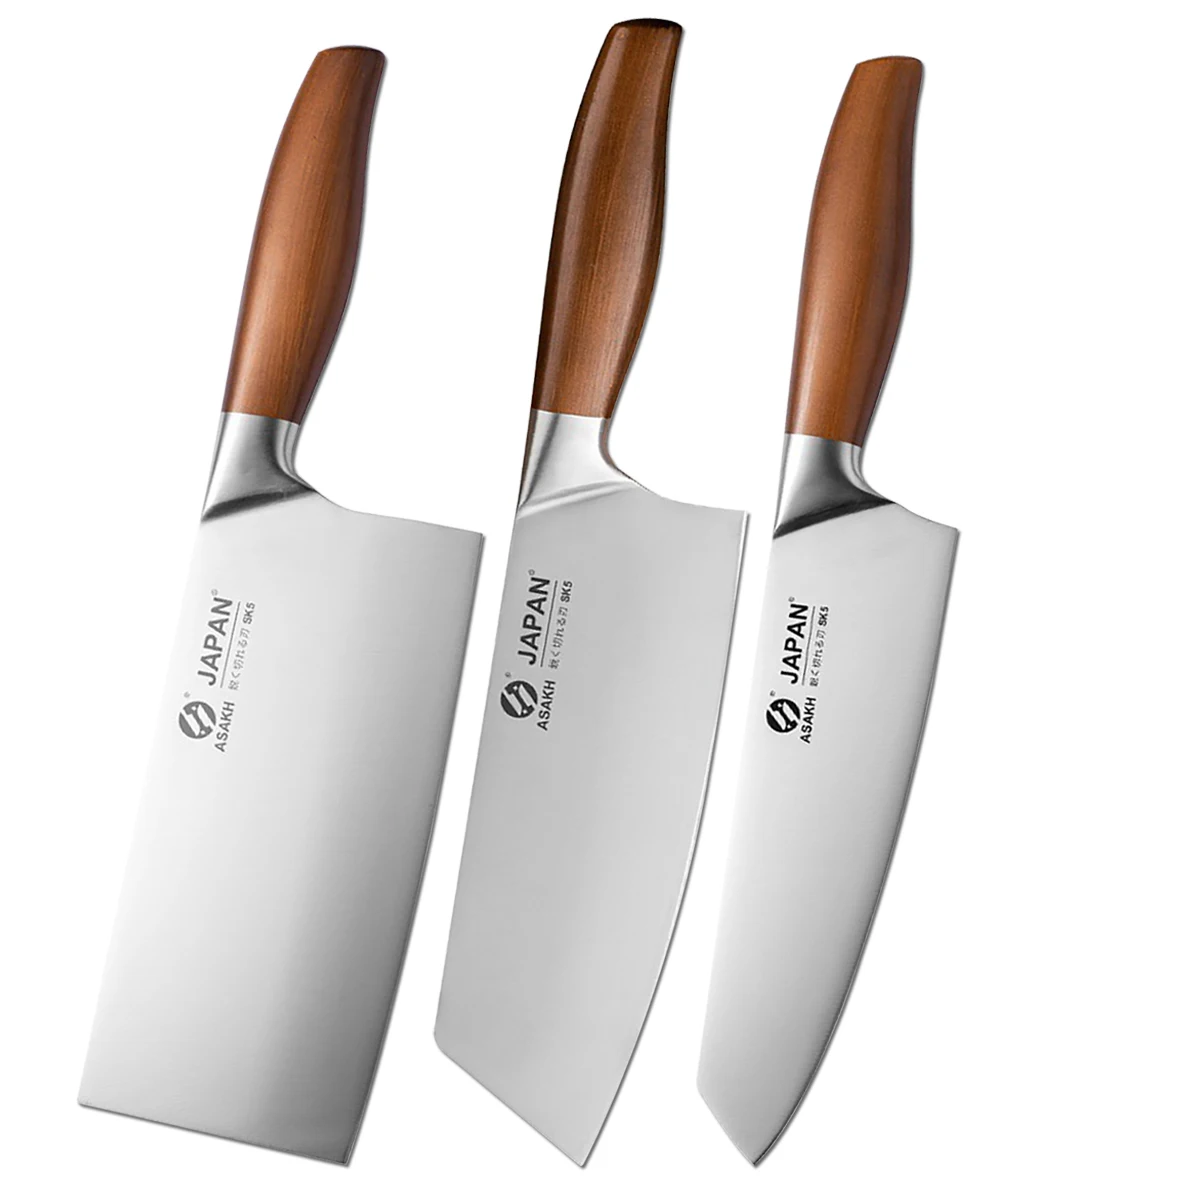 https://ae01.alicdn.com/kf/S3d475e4fea8645949a4cda1f53b20728t/Juego-de-cuchillos-de-cocina-de-1-a-6-piezas-utensilio-de-cocina-japon-s-para.jpg